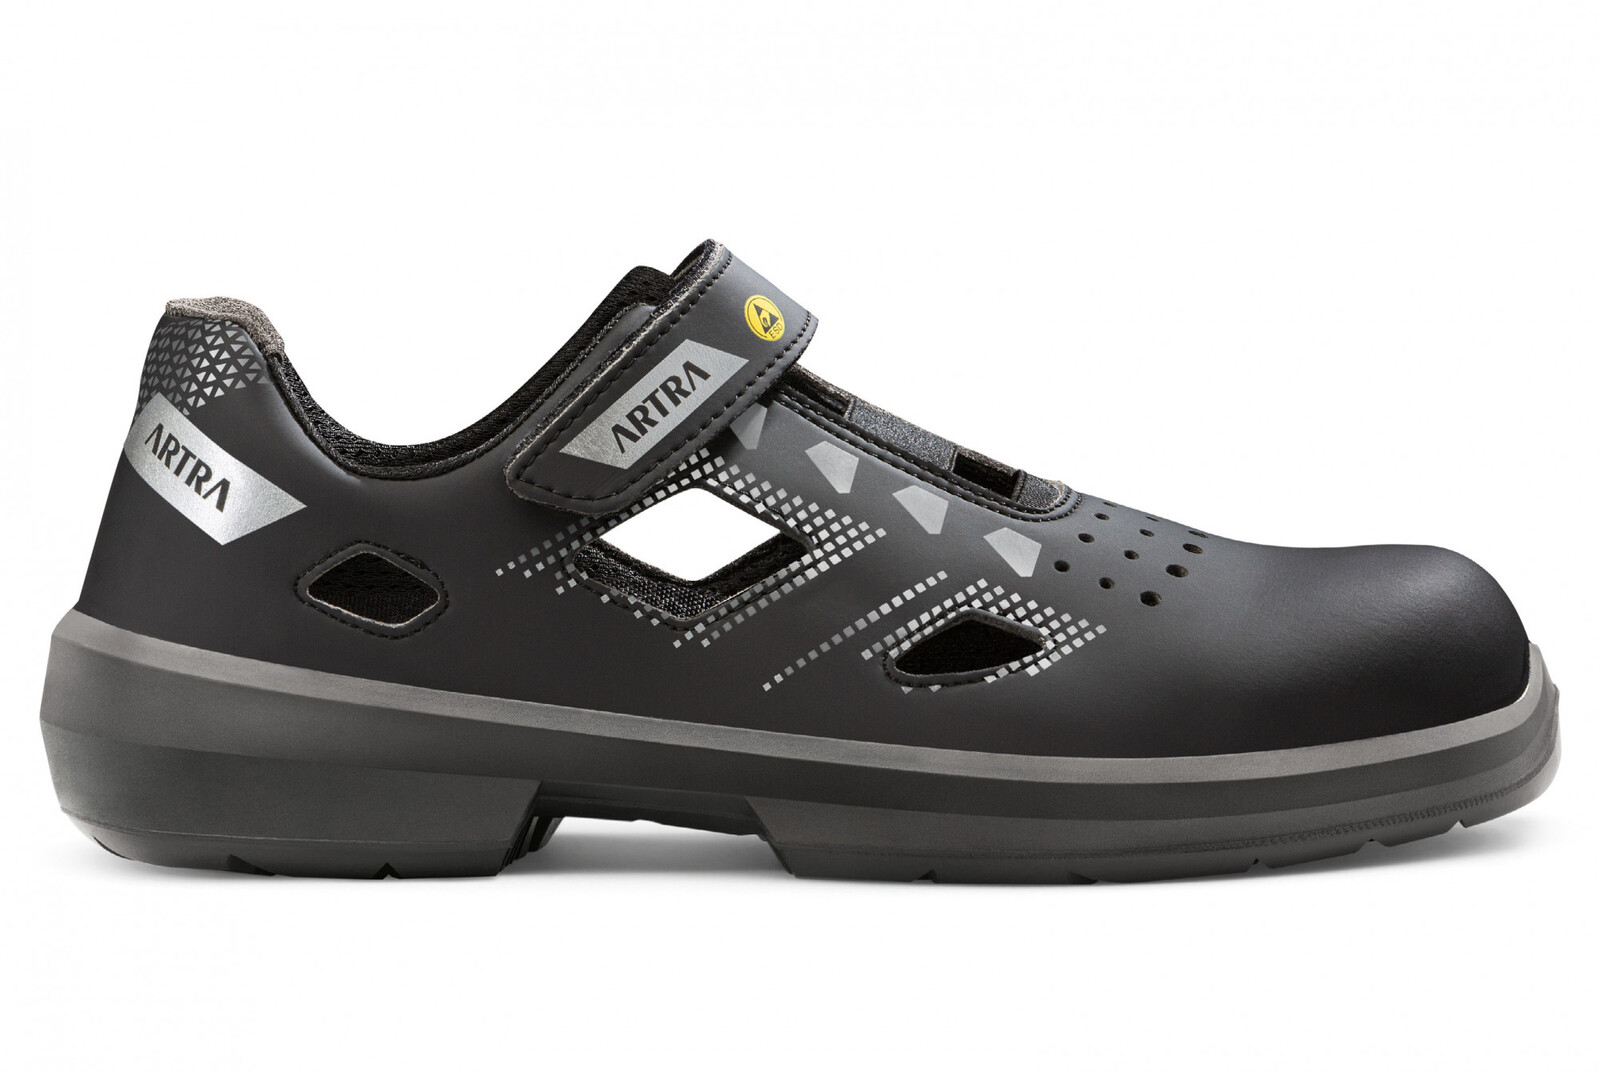 Bezpečnostné sandále Artra Arzo 805 676560 S1 SRC ESD MF - veľkosť: 40, farba: čierna/sivá